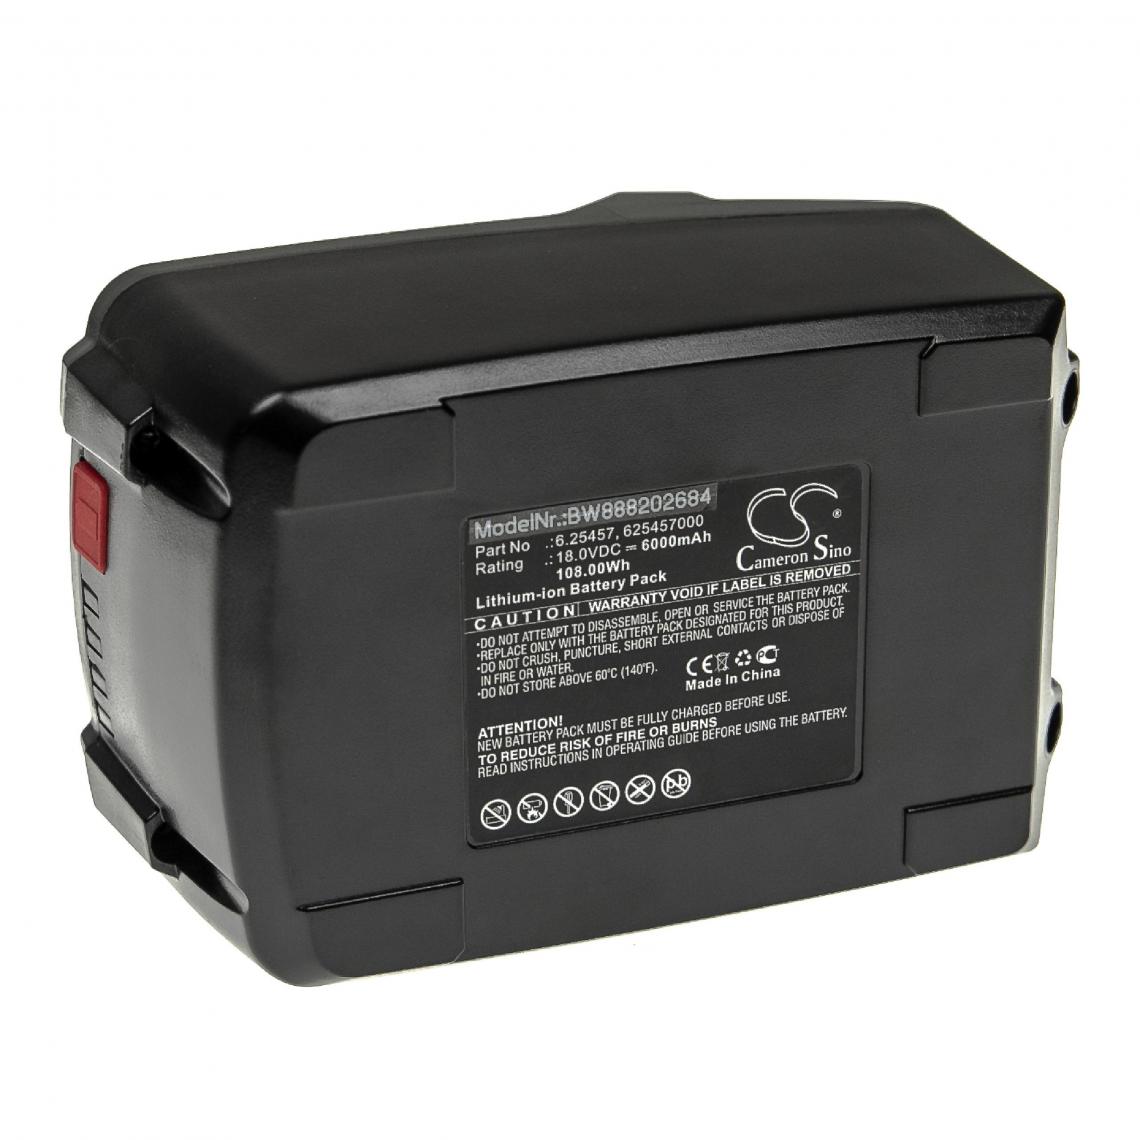 Vhbw - vhbw Batterie compatible avec Birchmeier REC 15 PC1, REX 15 AC1 outil électrique (6000mAh Li-ion 18 V) - Autre appareil de mesure